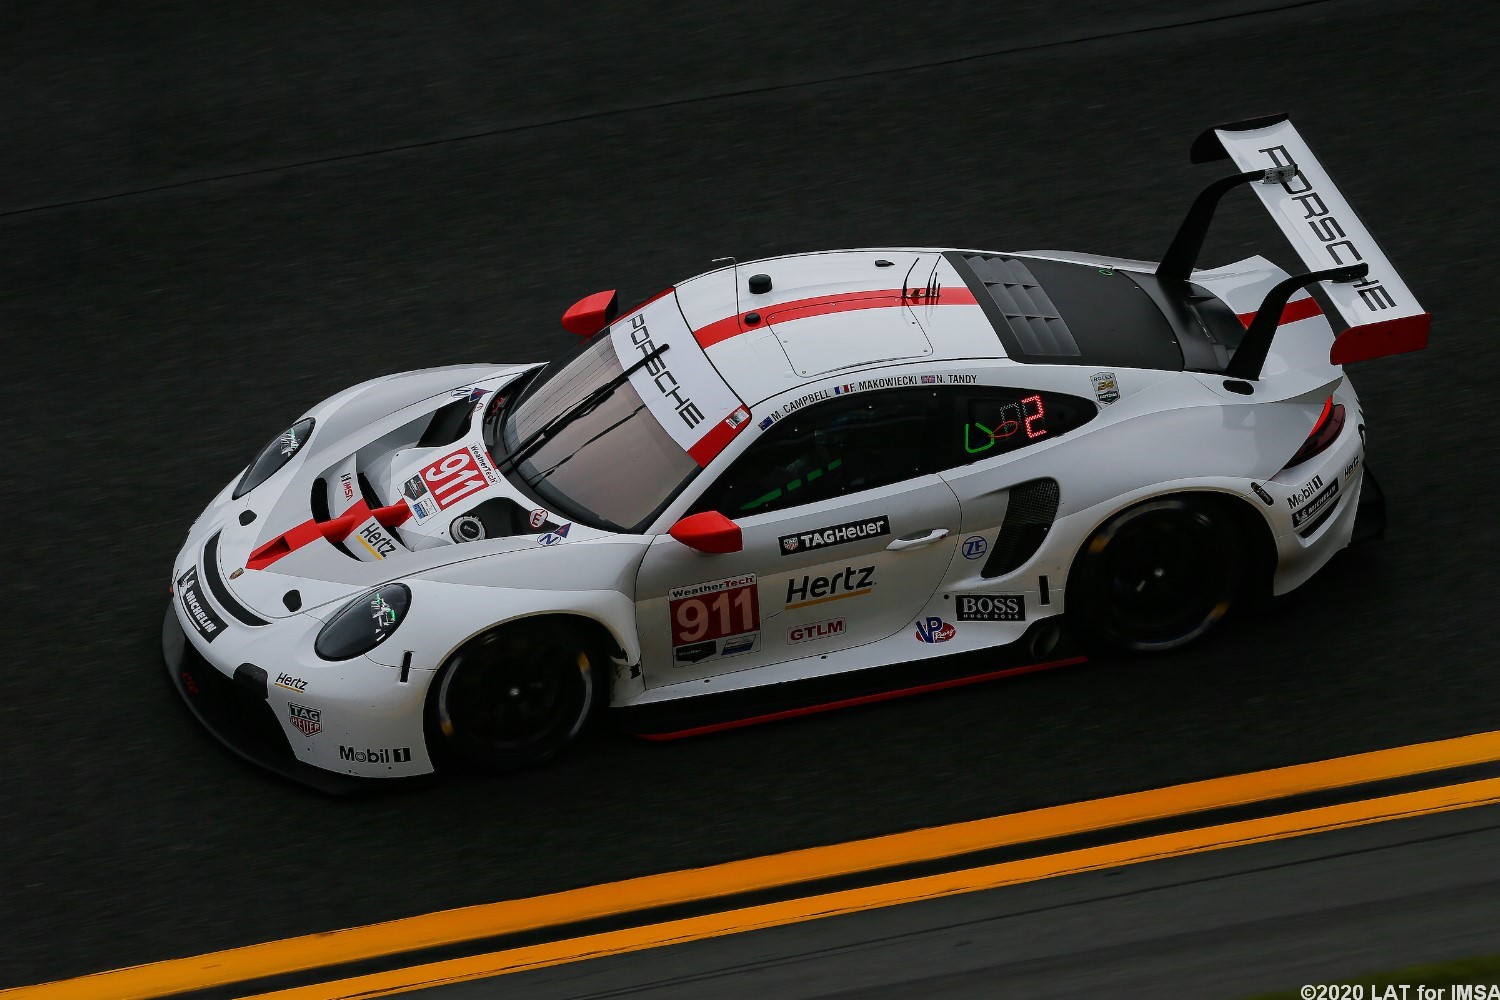 The #911 Porsche leads in GTLM